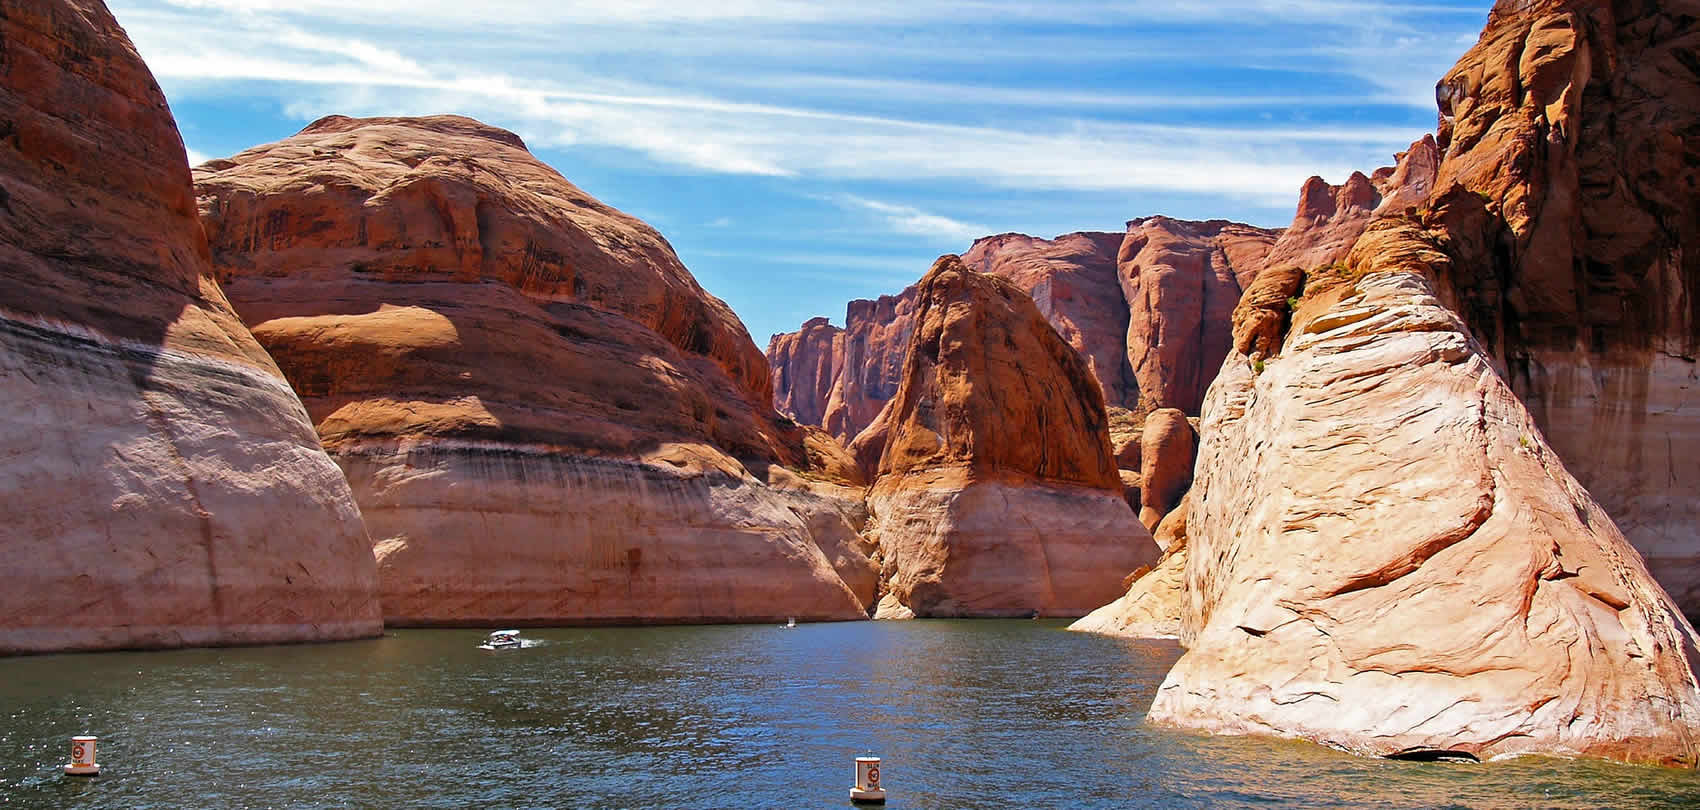 Etravel. Гранд каньон достопримечательности. Пустыня с голубой водой и скалами. Кот Аризона. Tourist things to do in Arizona.